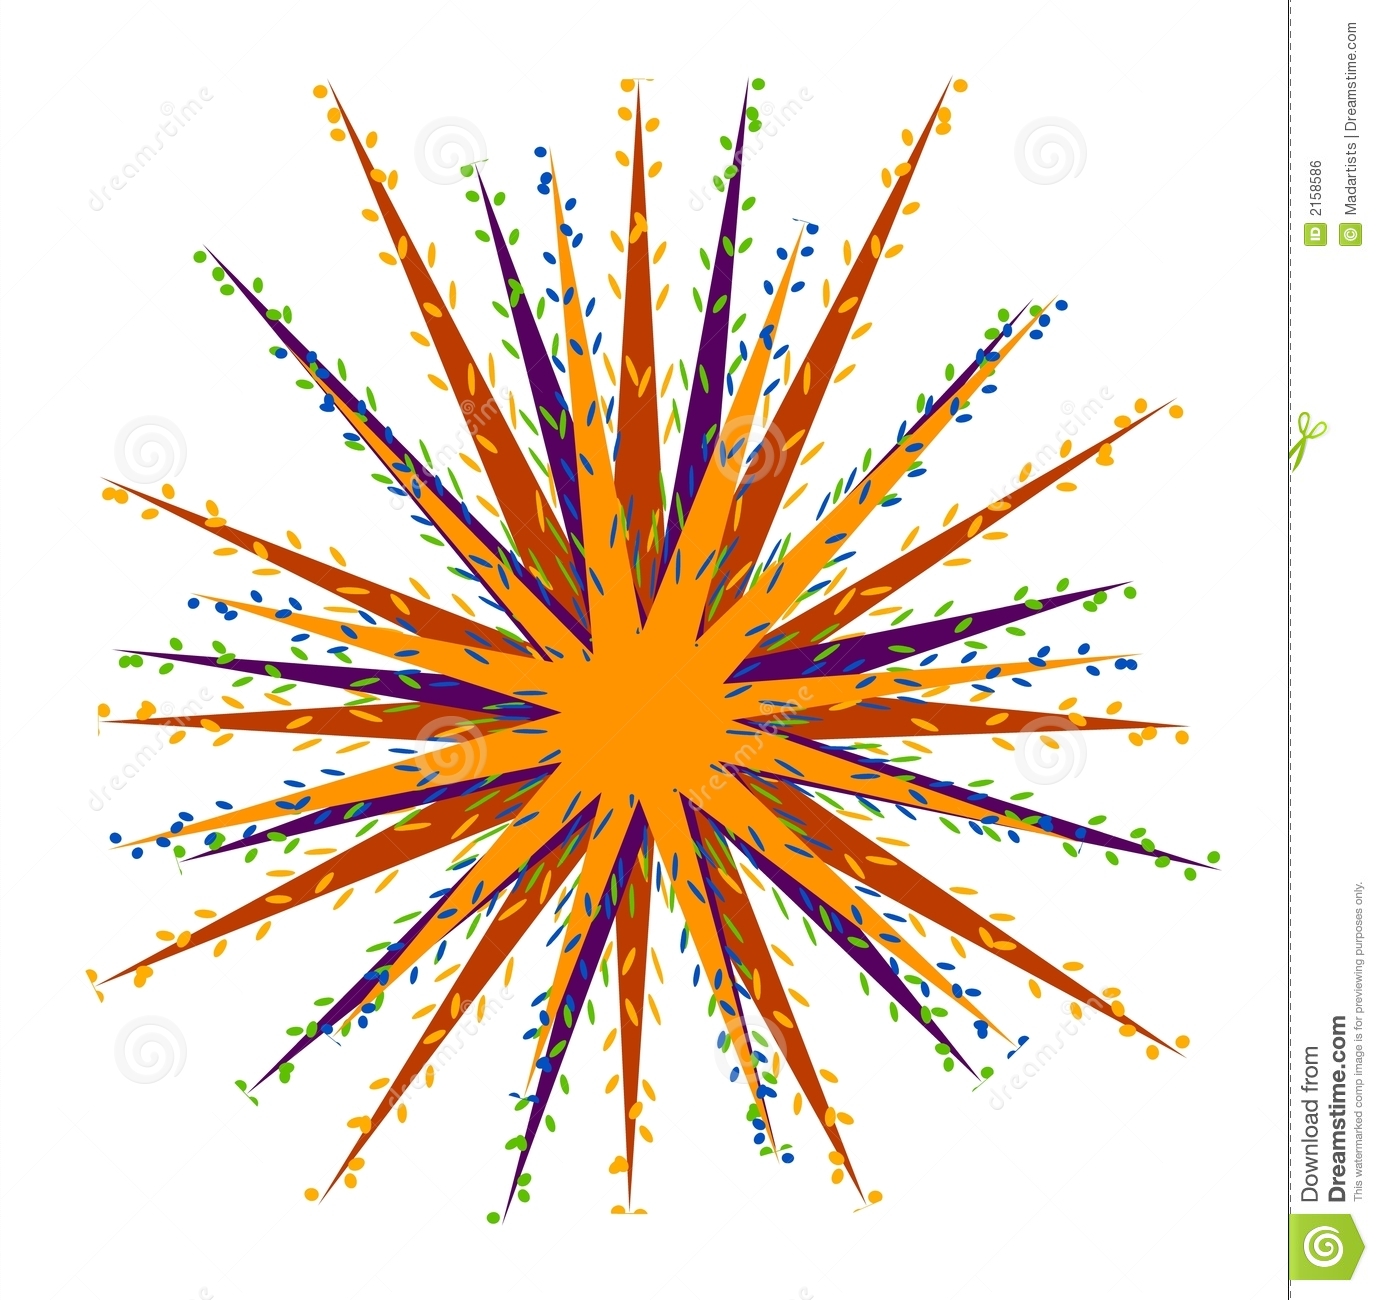 Confetti Explosion Spitzen Impuls Lizenzfreies Stockbild   Bild